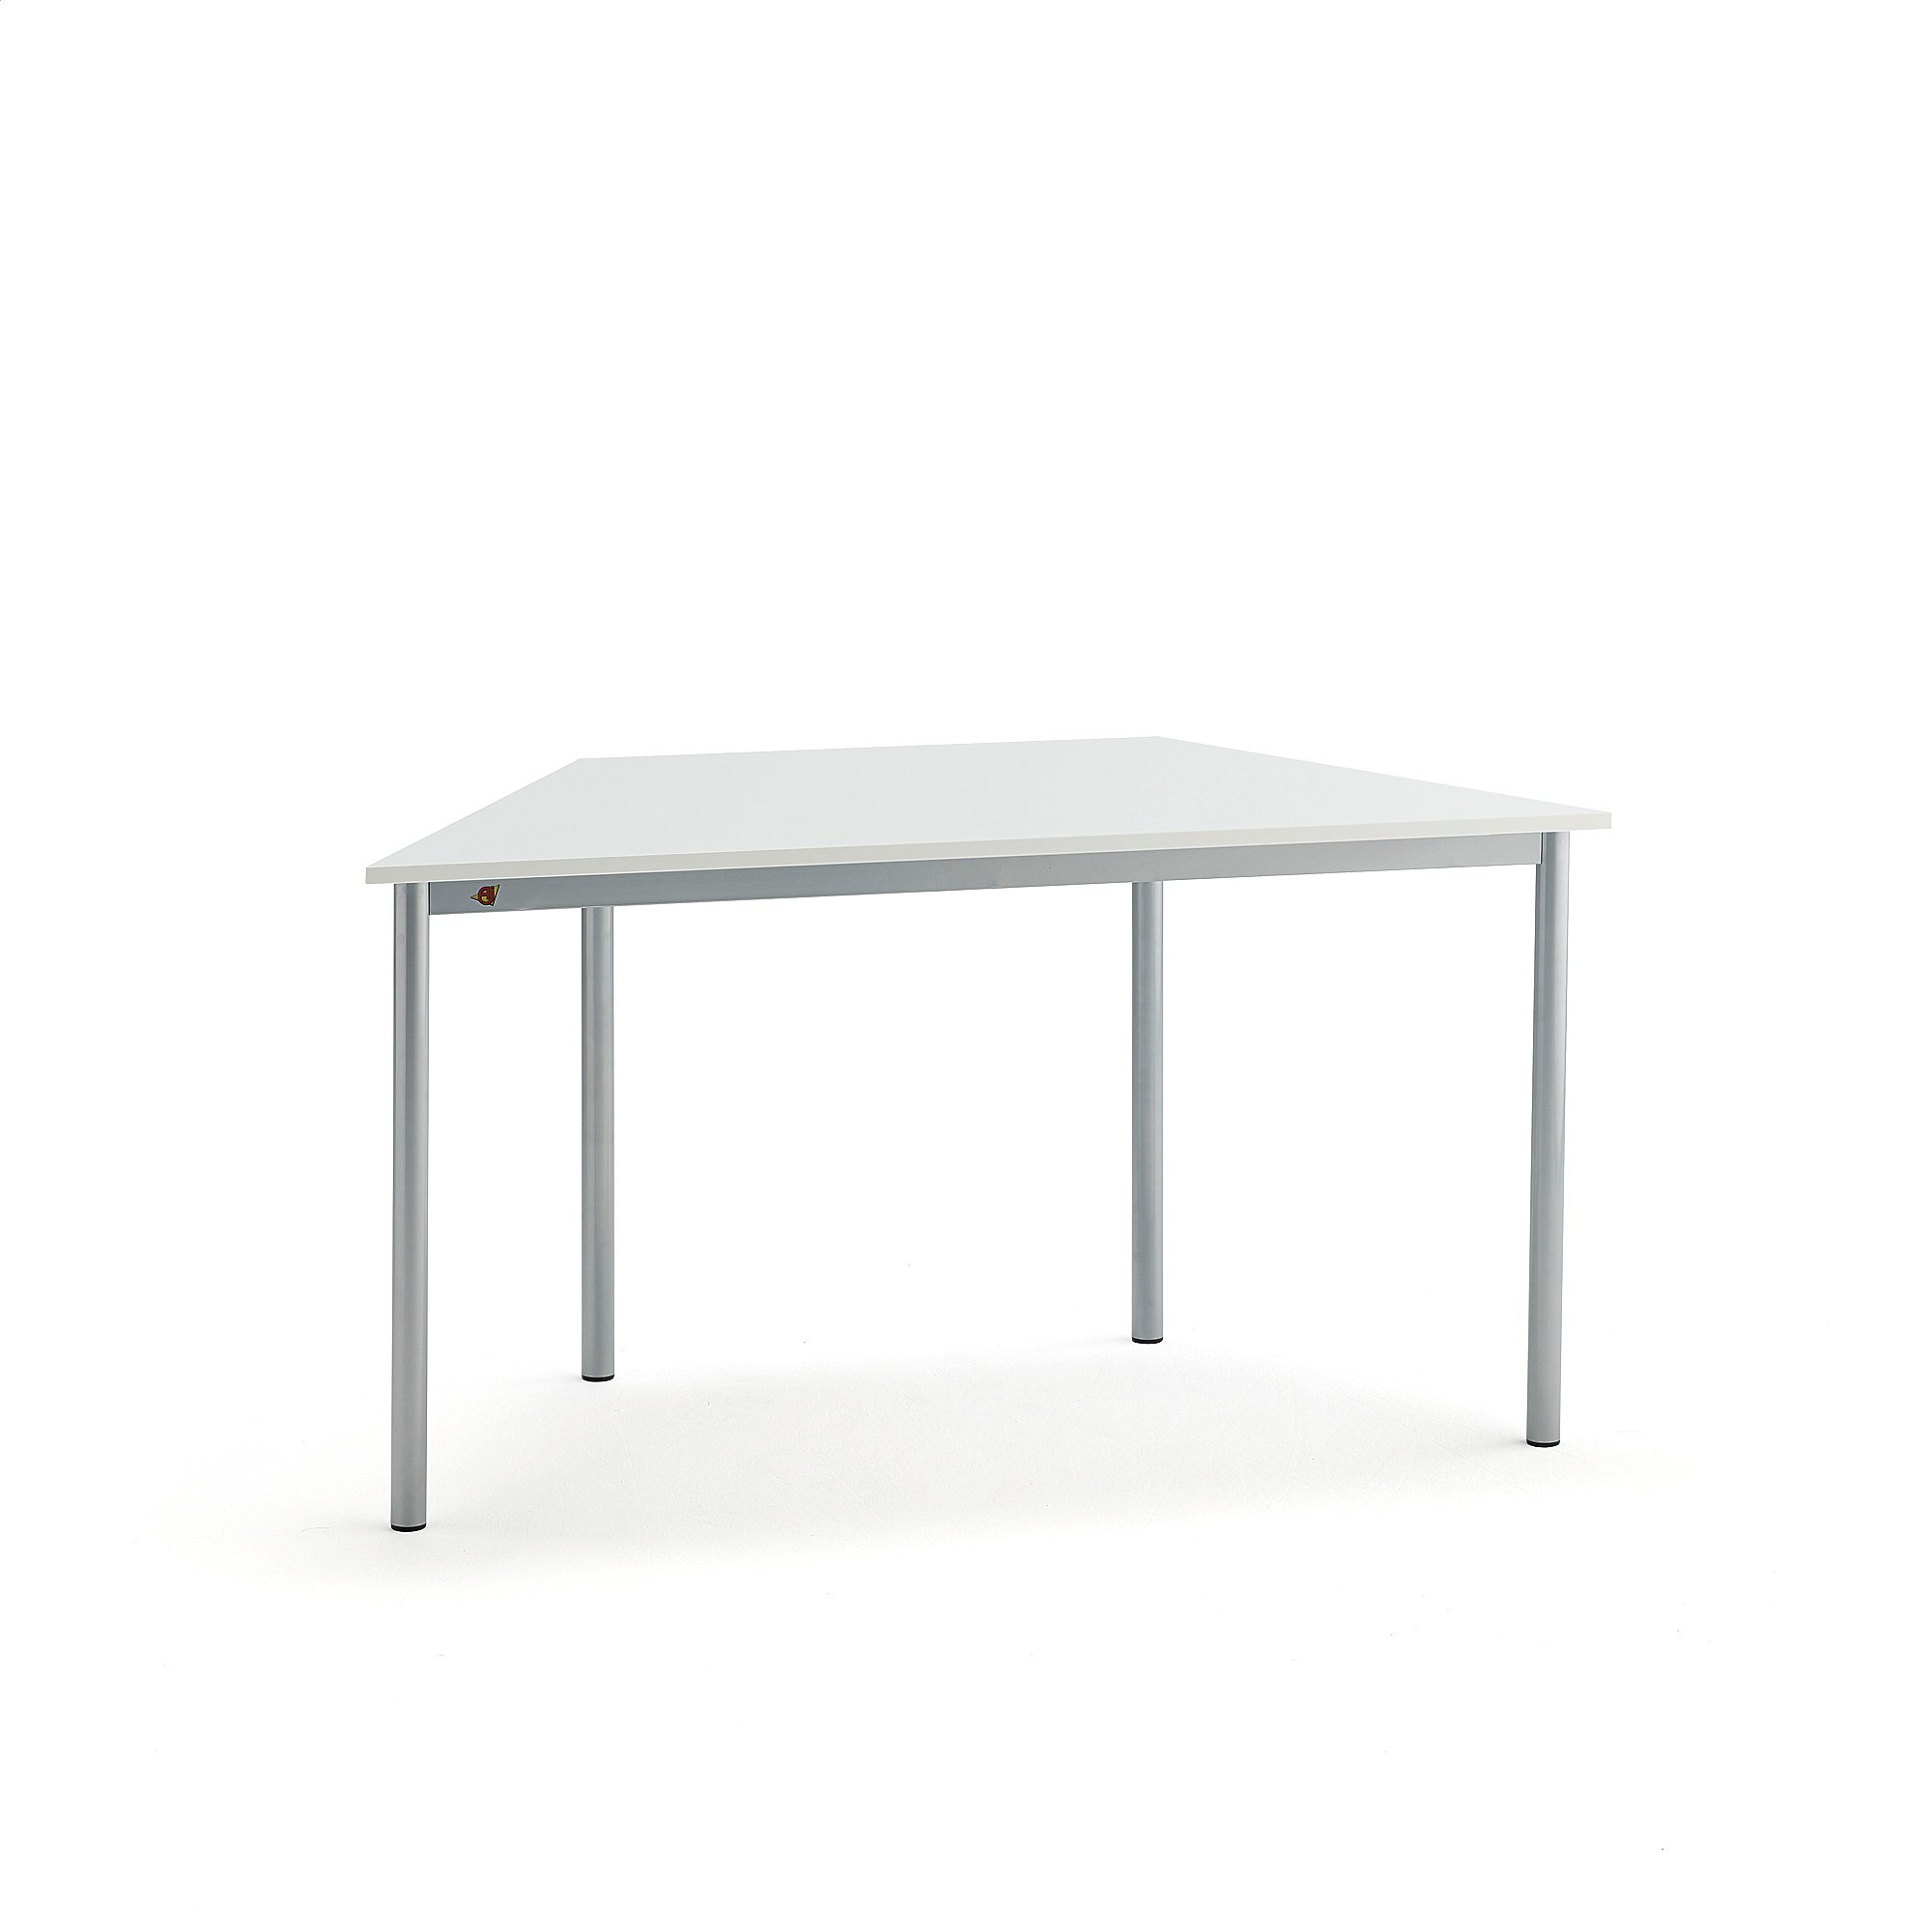 Stůl SONITUS TRAPETS, 1200x600x720 mm, stříbrné nohy, HPL deska tlumící hluk, bílá